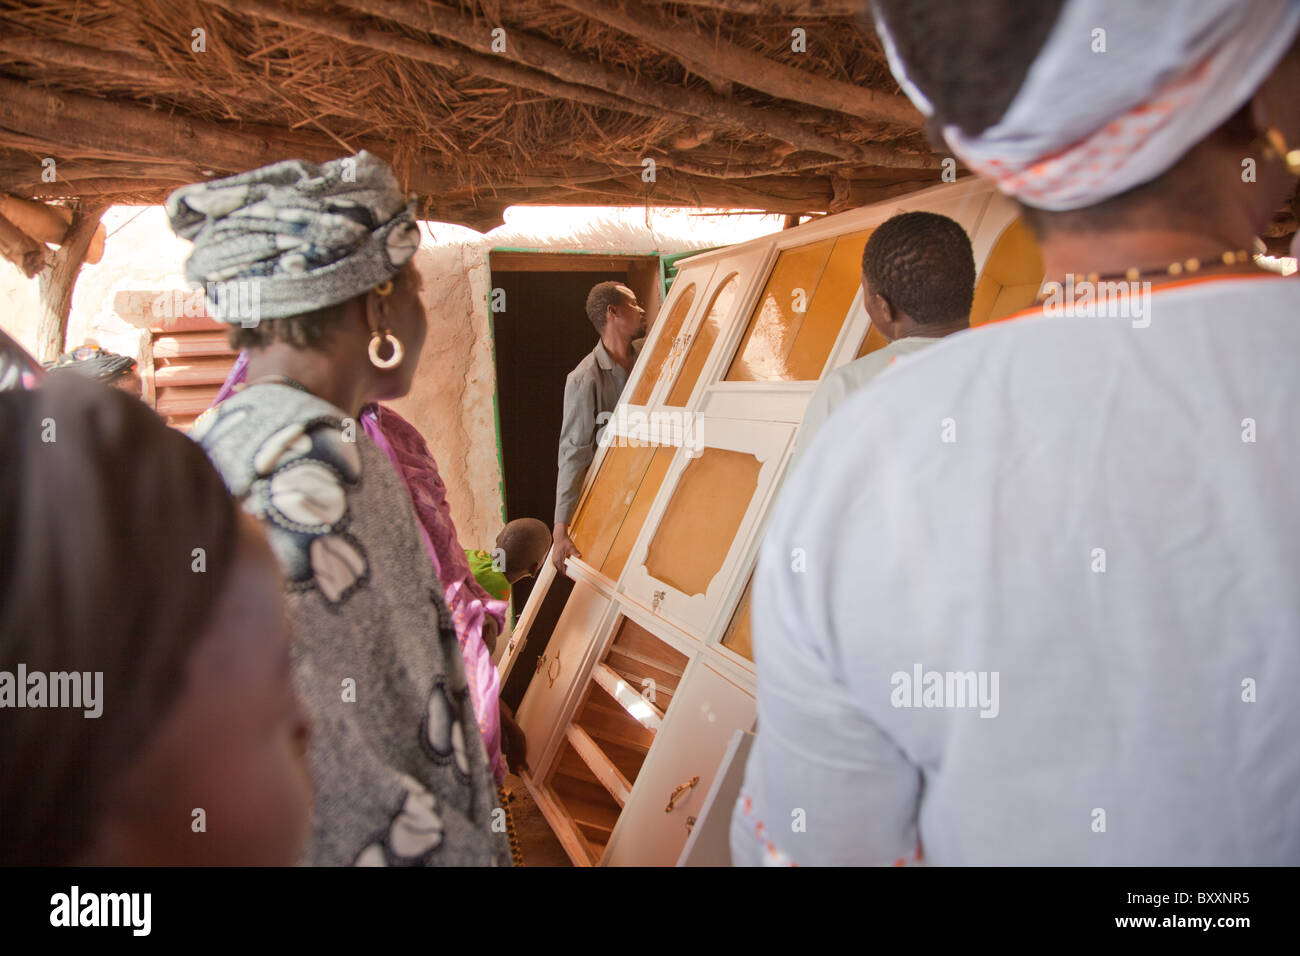 In Burkina Faso legen Sie ein Fulani Hochzeit getroffen hat. Am Tag der 'Bantule' bewegen Freunde/Familie Möbel in ihr neues Heim. Stockfoto